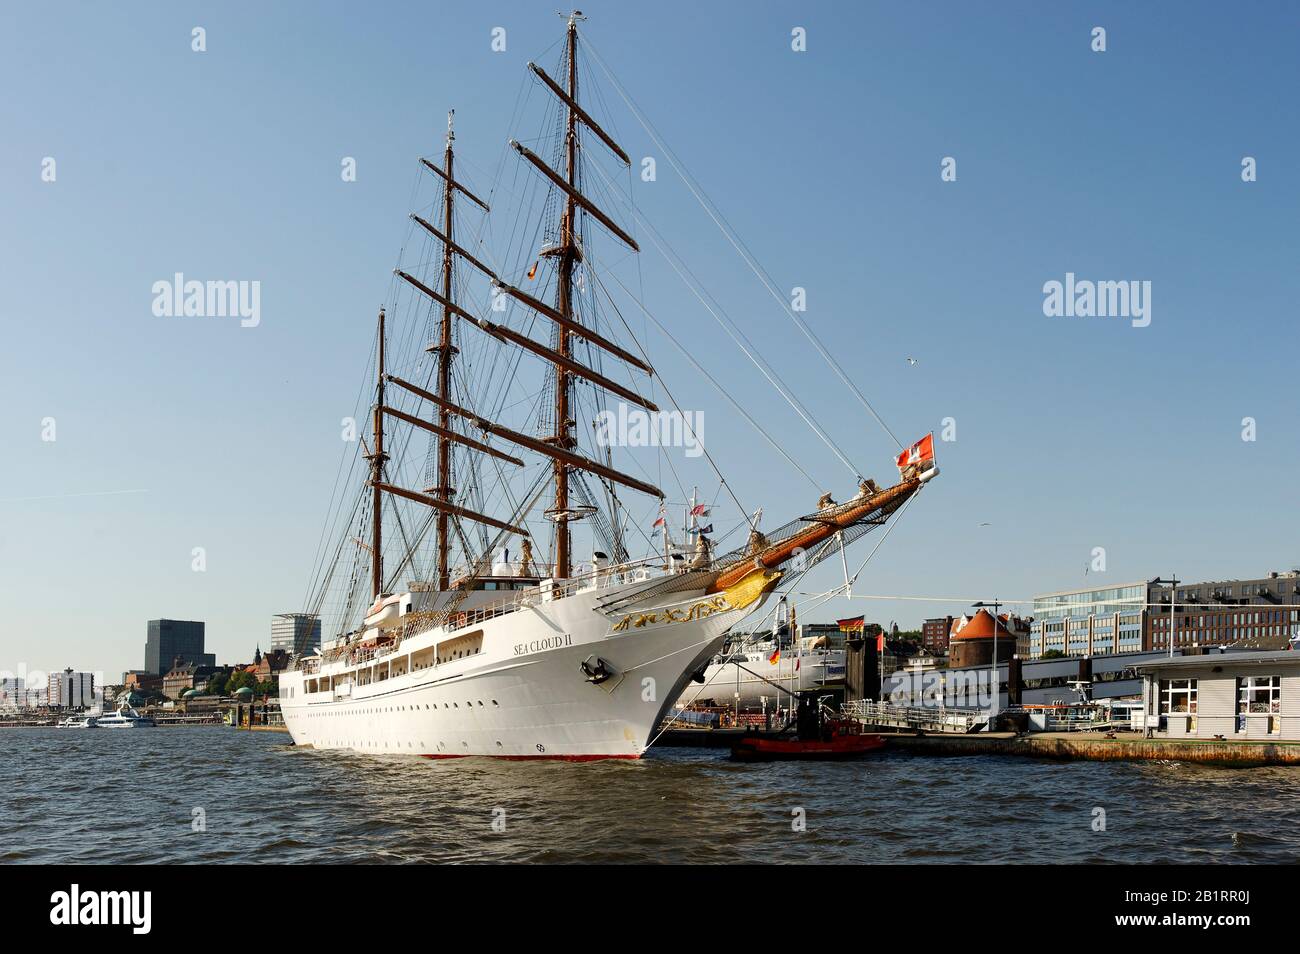 Luxus-Segelyacht SEA CLOUD II, Lifestyle und maritimes Flair im City- und Sportboothafen Hamburg, Neustadt, Hansestadt Hamburg, Deutschland, Stock Photo